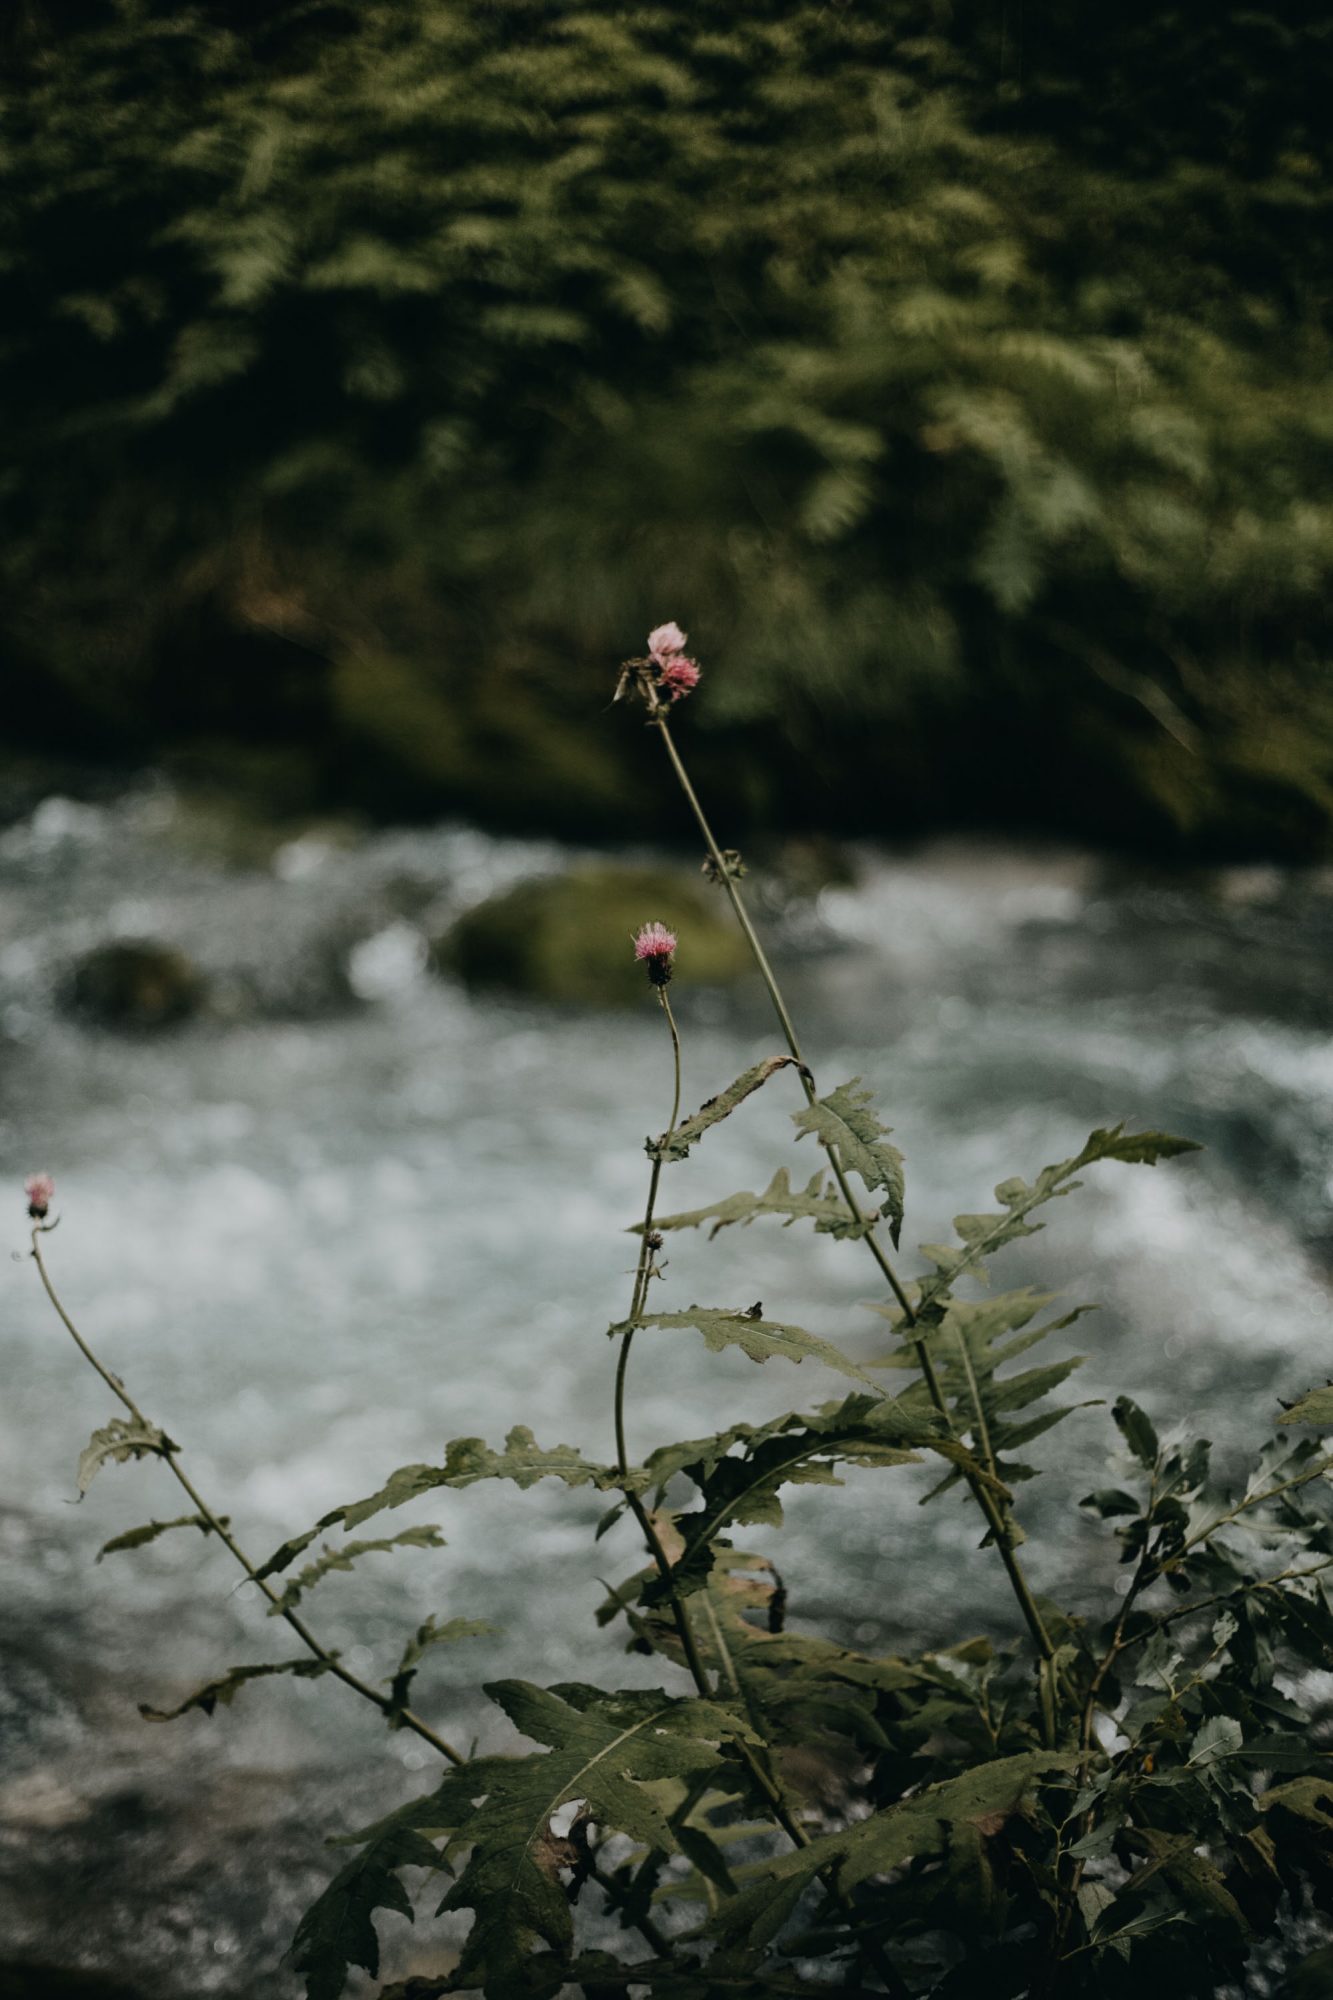 wild flower near a river